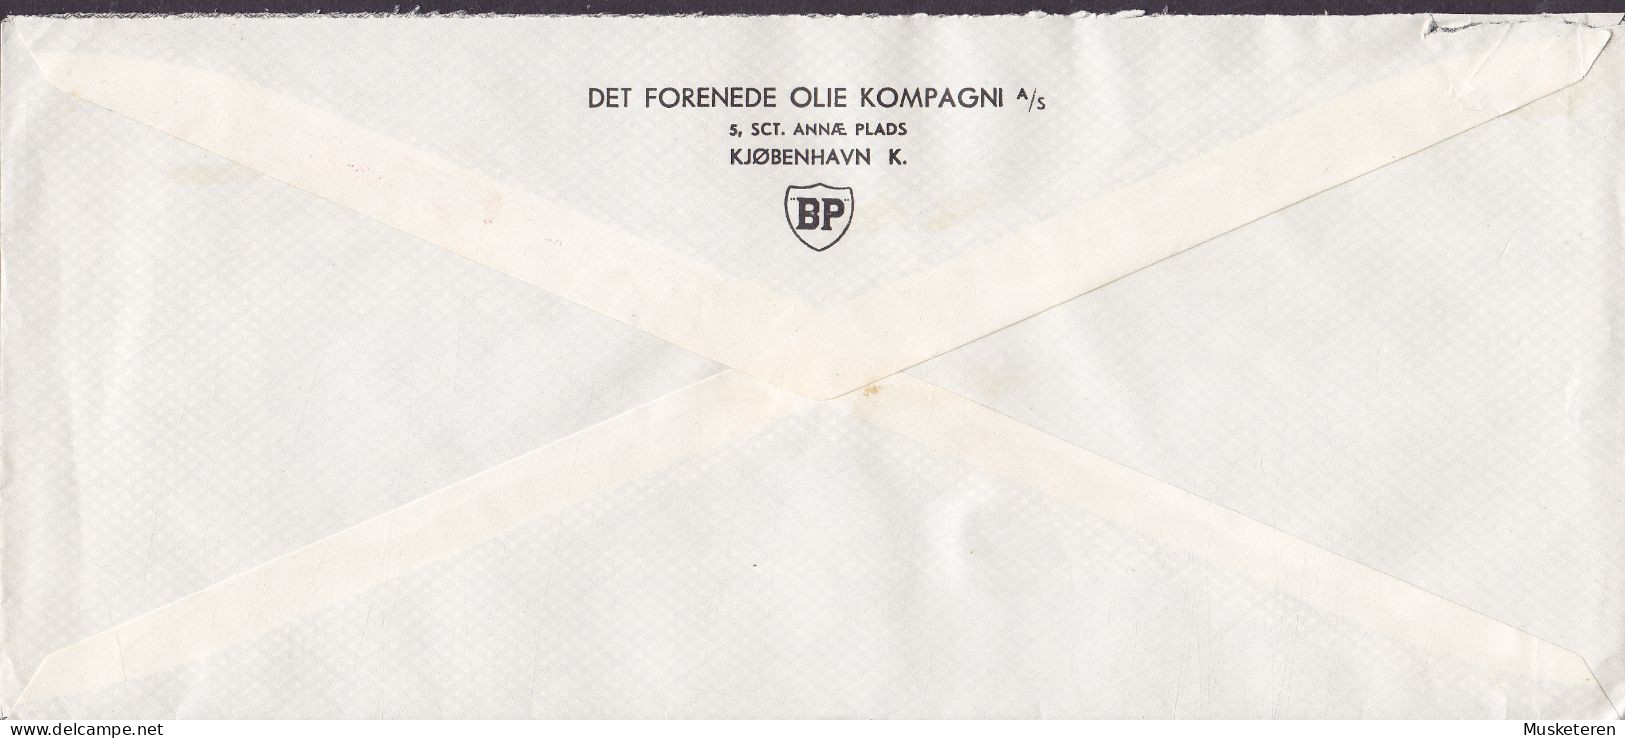 Denmark DET FORENEDE OLIE KOMPAGNI British Petrol Cachet ATM Cancel '399', KØBENHAVN 1948 Meter Cancel Cover (2 Scans) - Macchine Per Obliterare (EMA)